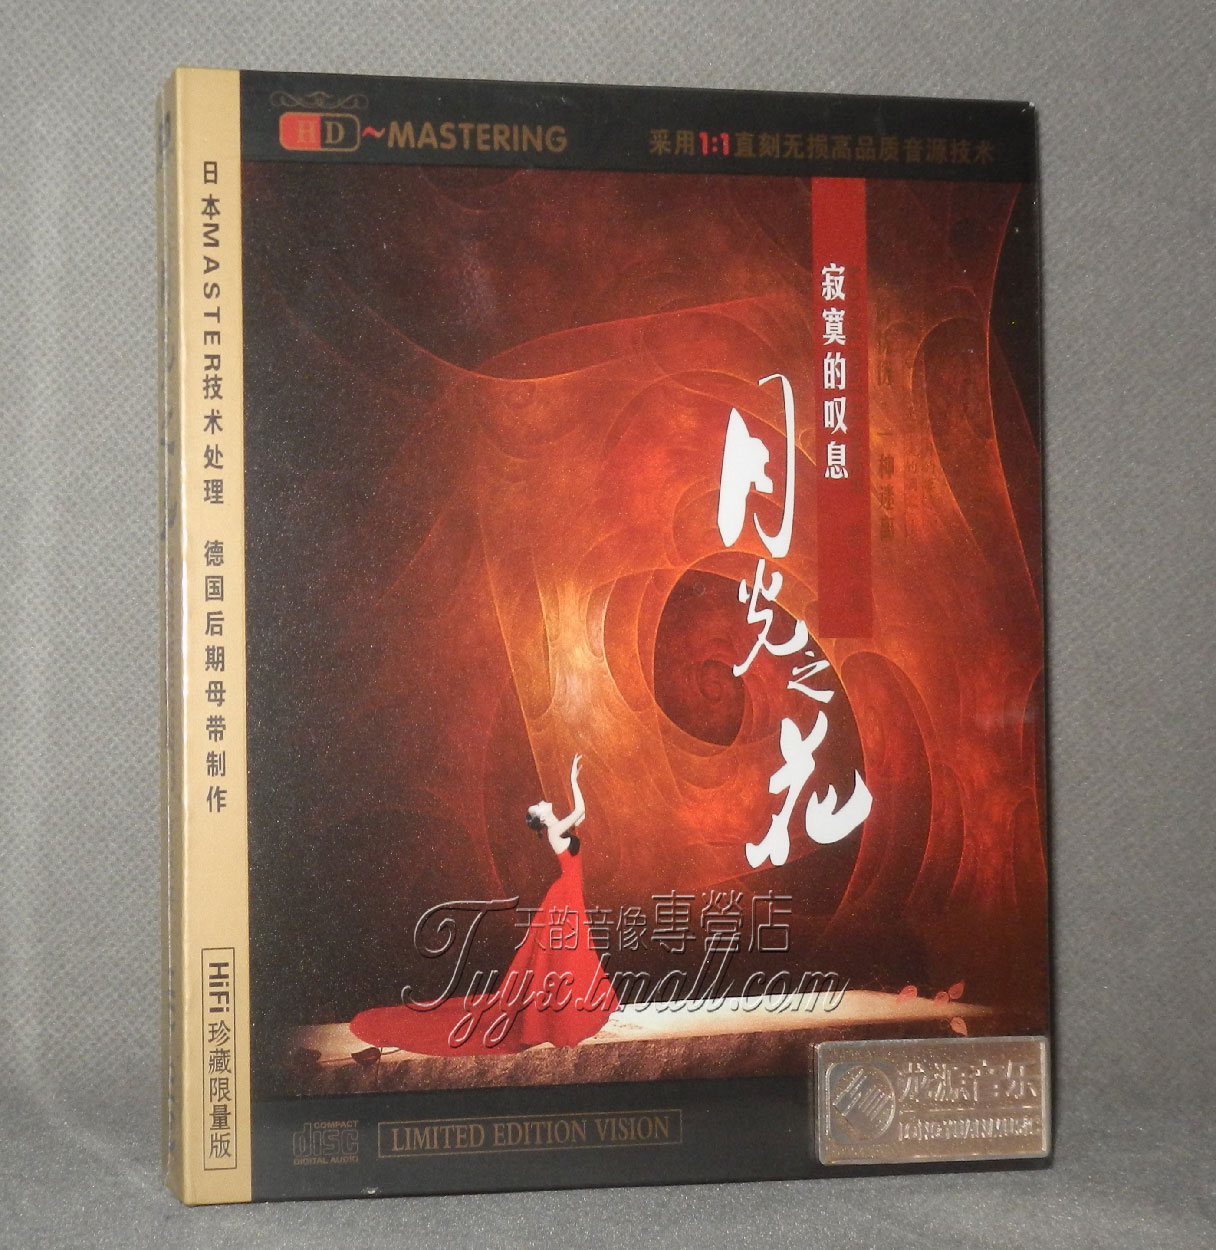 【正版发烧】龙源唱片 曹芙嘉 月光之花 寂寞的叹息 HD 1 CD